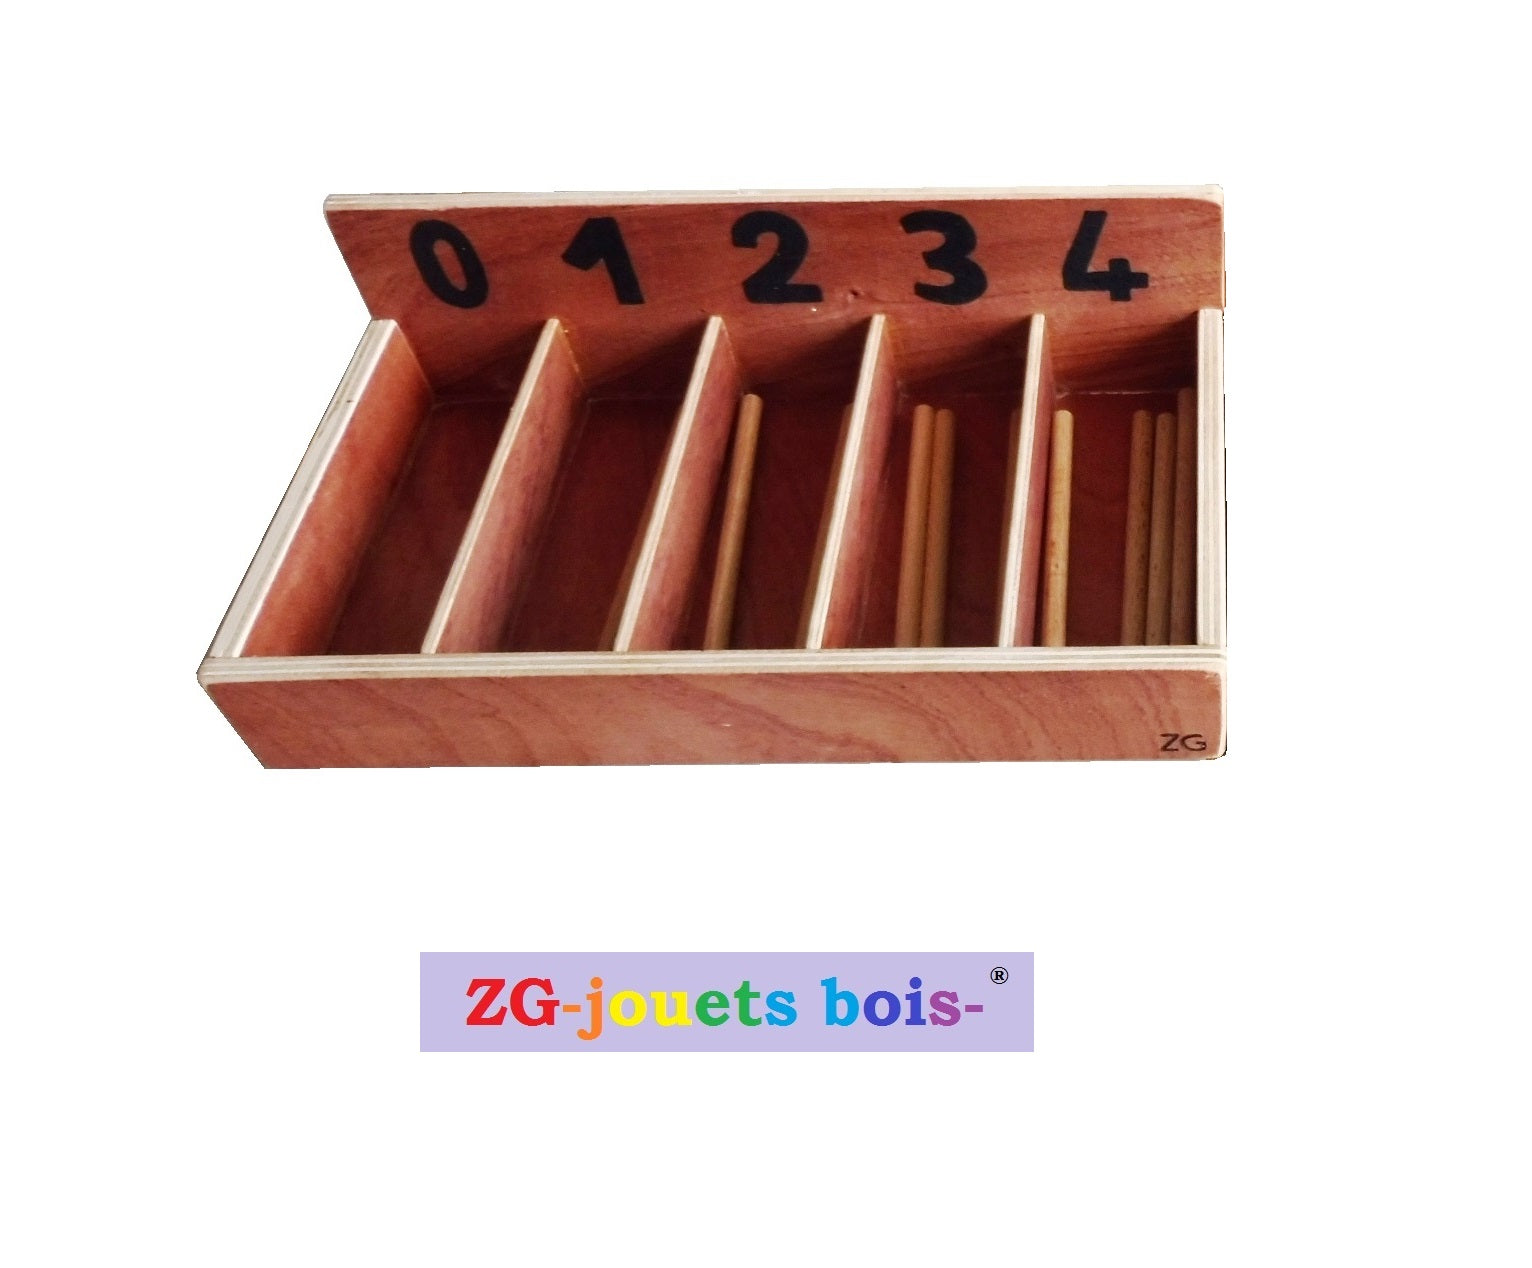 première boite à fuseau de 0 à 4 avec 10 fuseaux matériel bois pédagogie montessori fait main